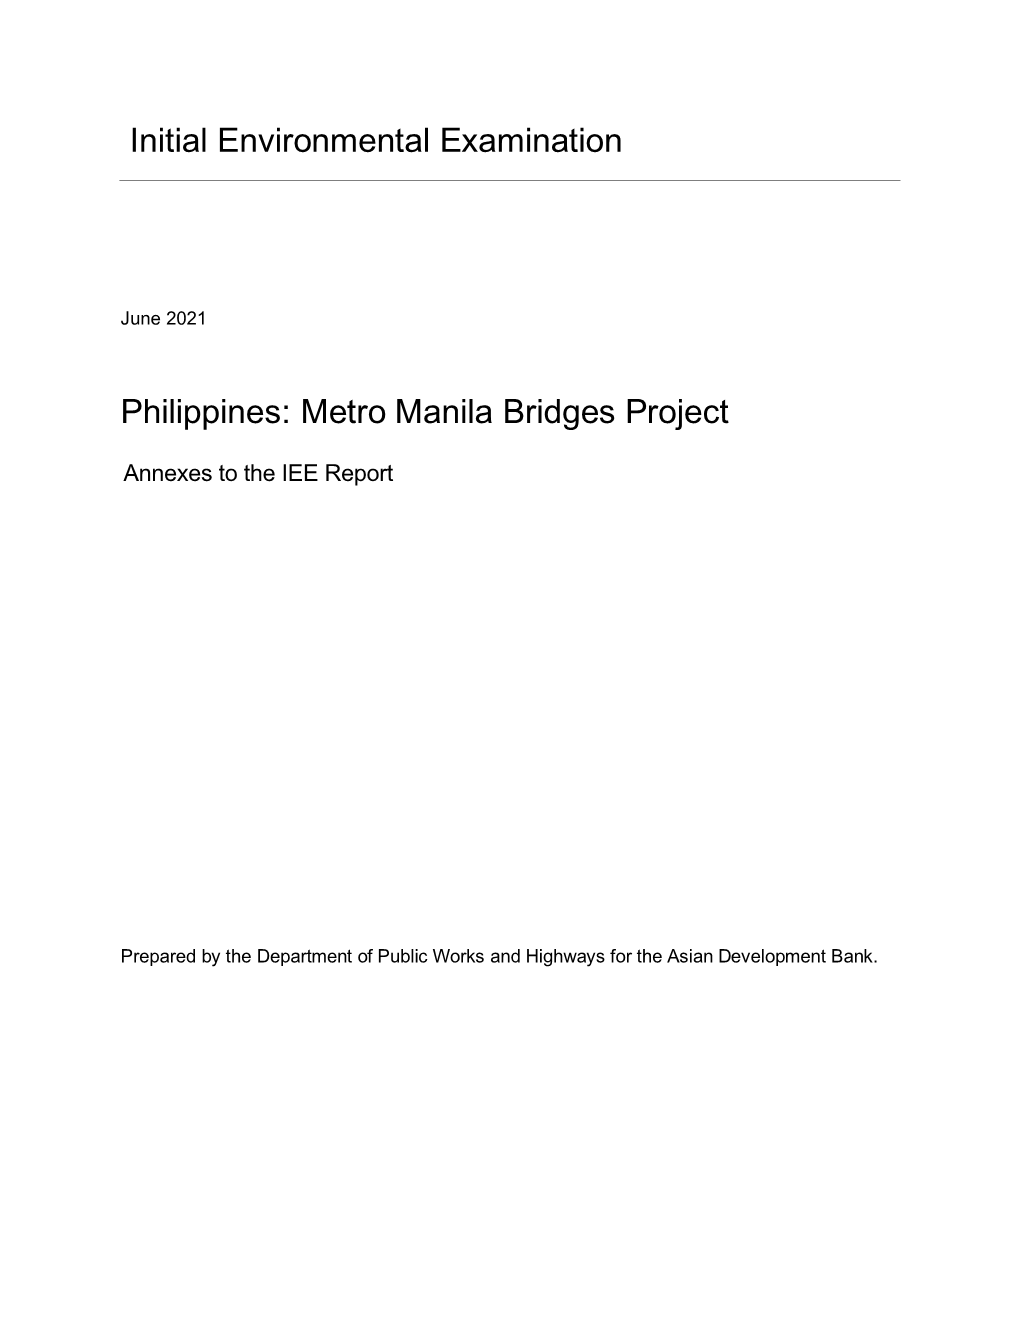 Initial Environmental Examination Philippines: Metro Manila Bridges